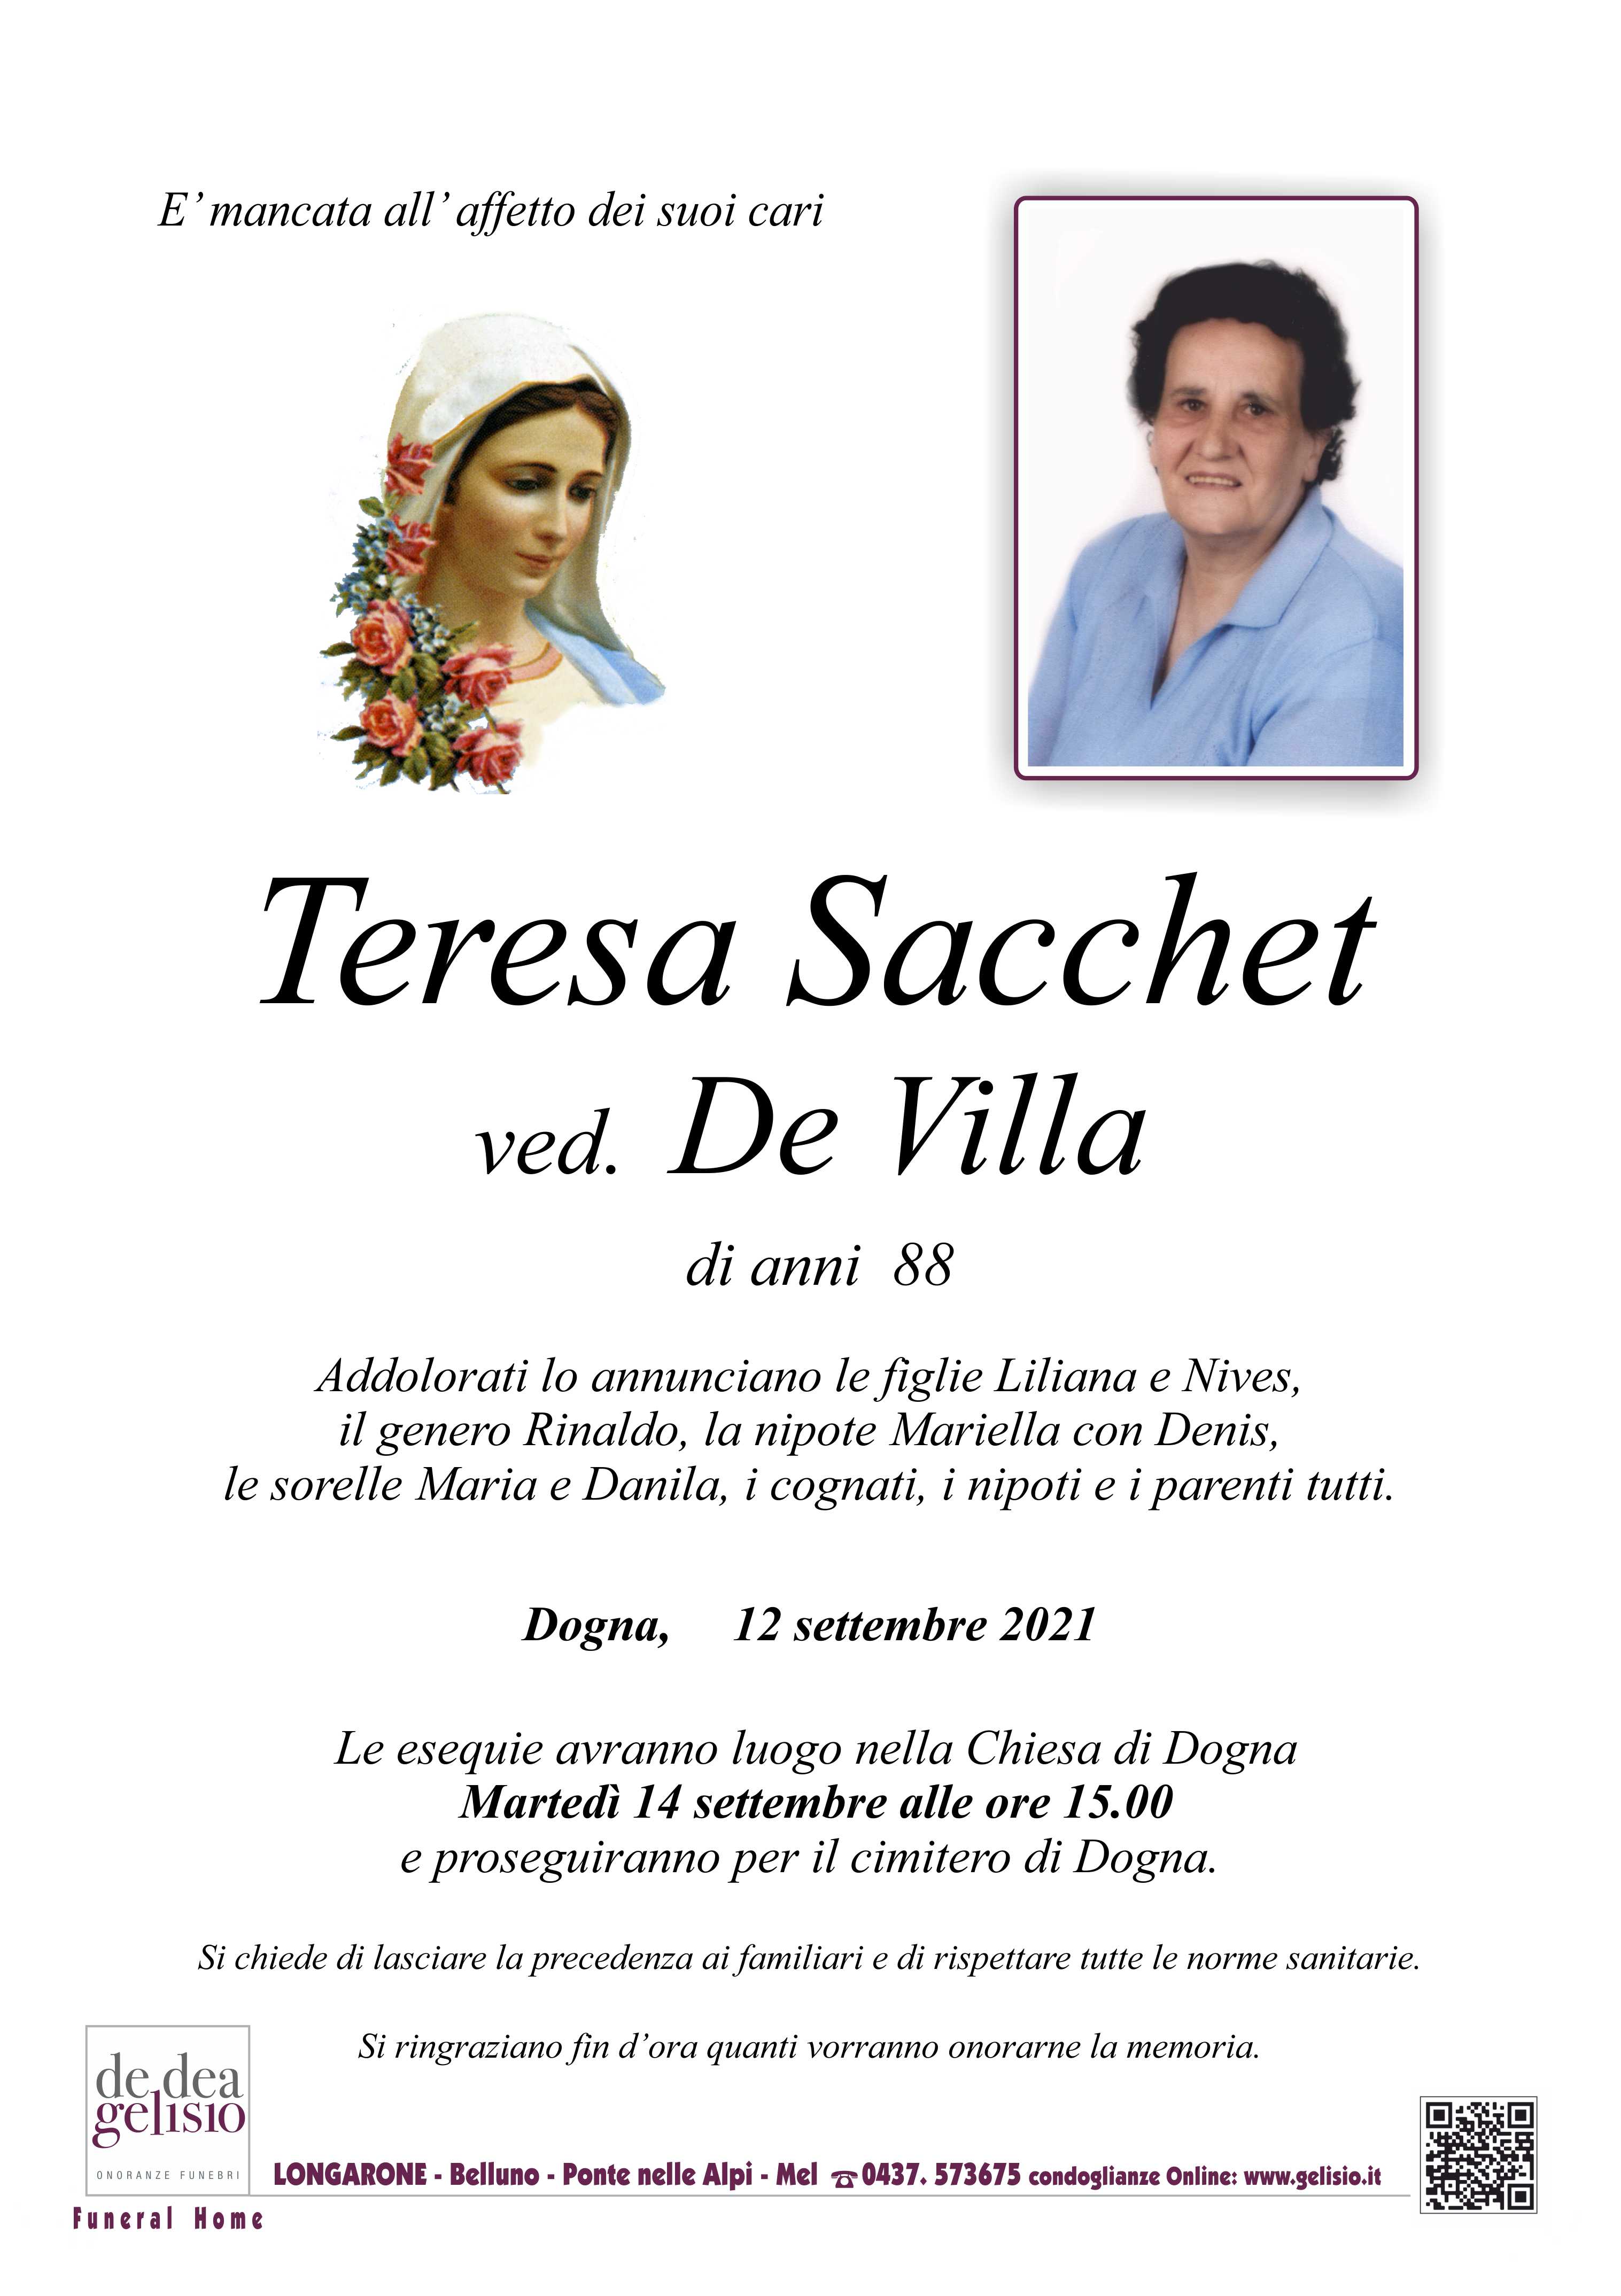 Sacchet Teresa